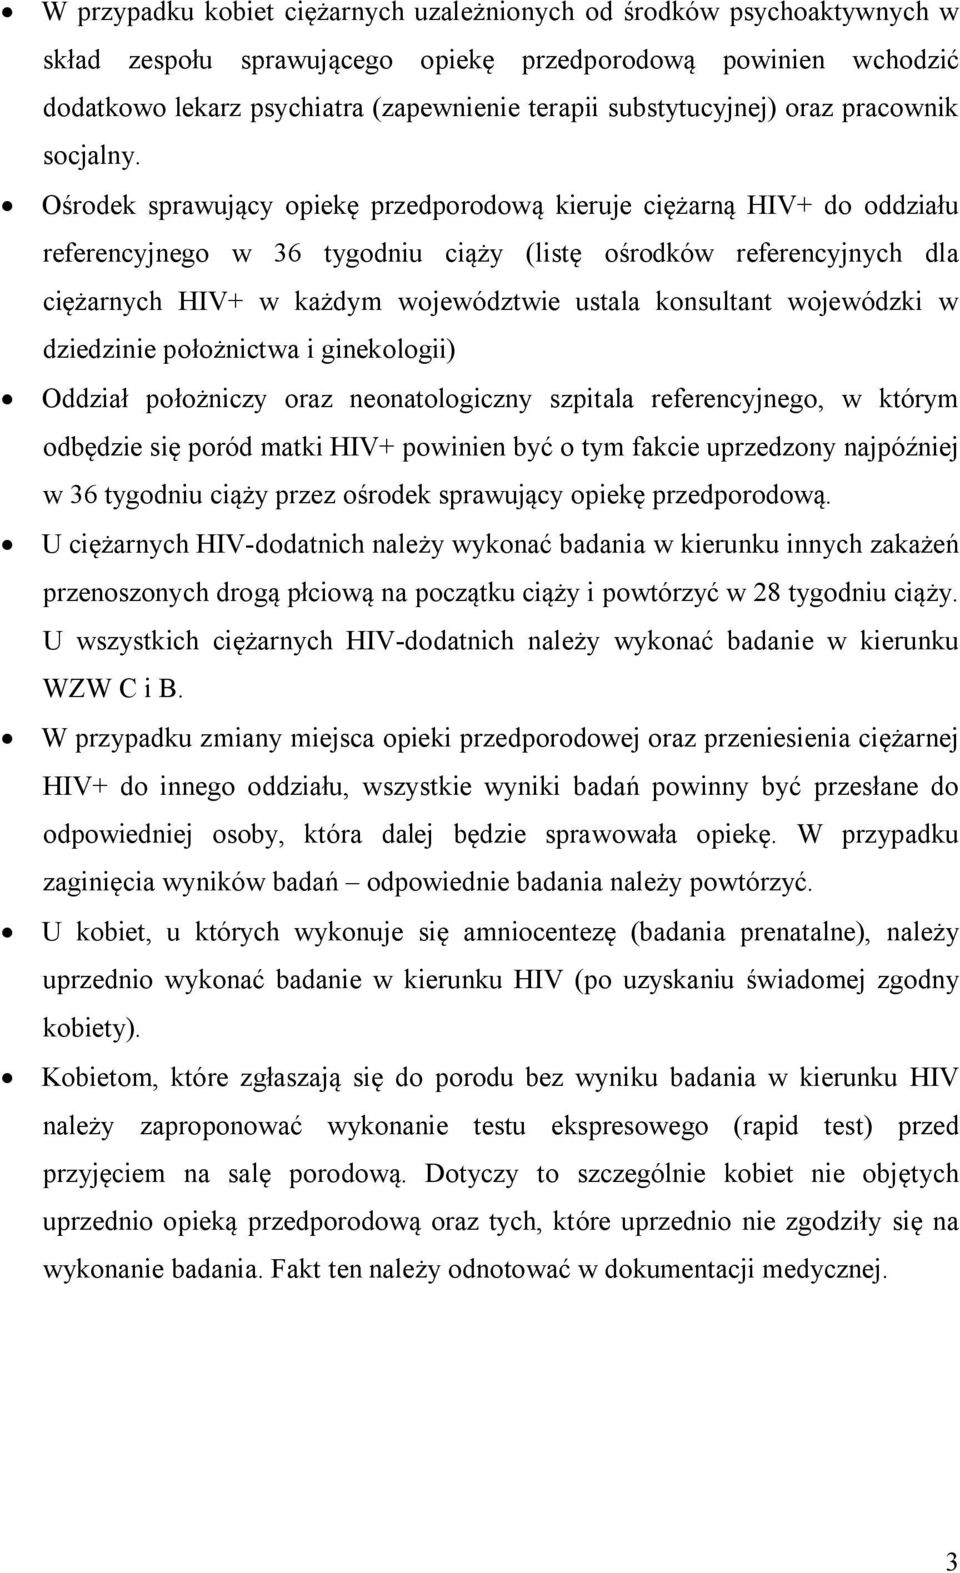 Ośrodek sprawujący opiekę przedporodową kieruje ciężarną HIV+ do oddziału referencyjnego w 36 tygodniu ciąży (listę ośrodków referencyjnych dla ciężarnych HIV+ w każdym województwie ustala konsultant